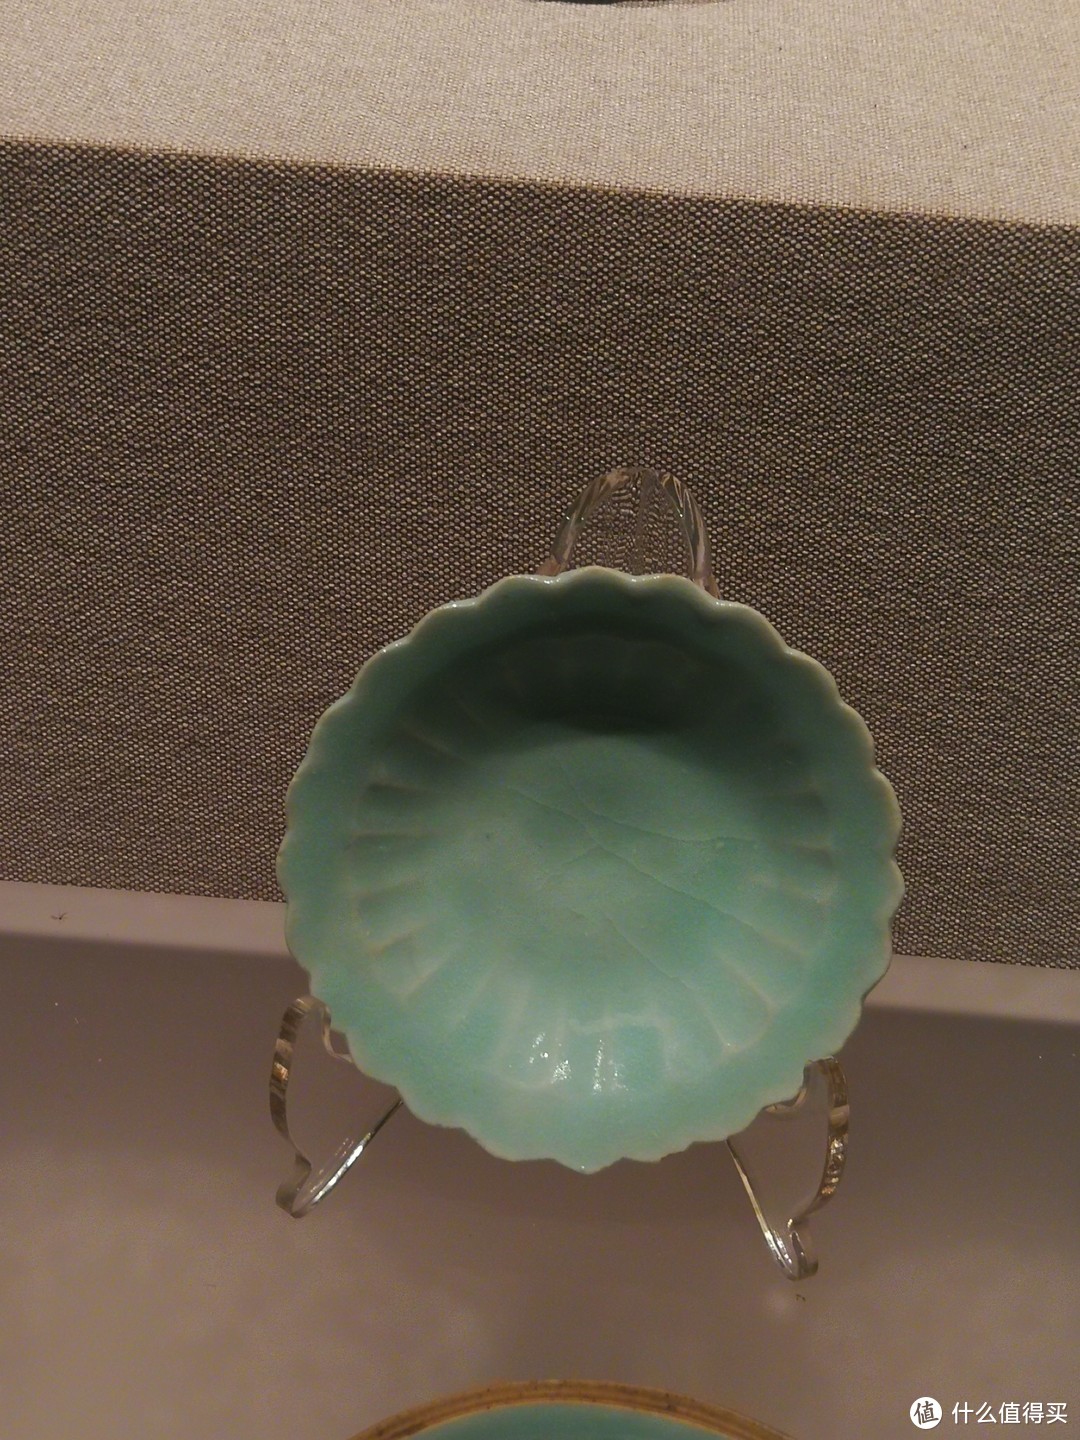 青釉荷叶形盖瓷罐中存在的99件小碟之一，南宋景德镇窑青白釉刻花莲瓣纹芒口盖碗